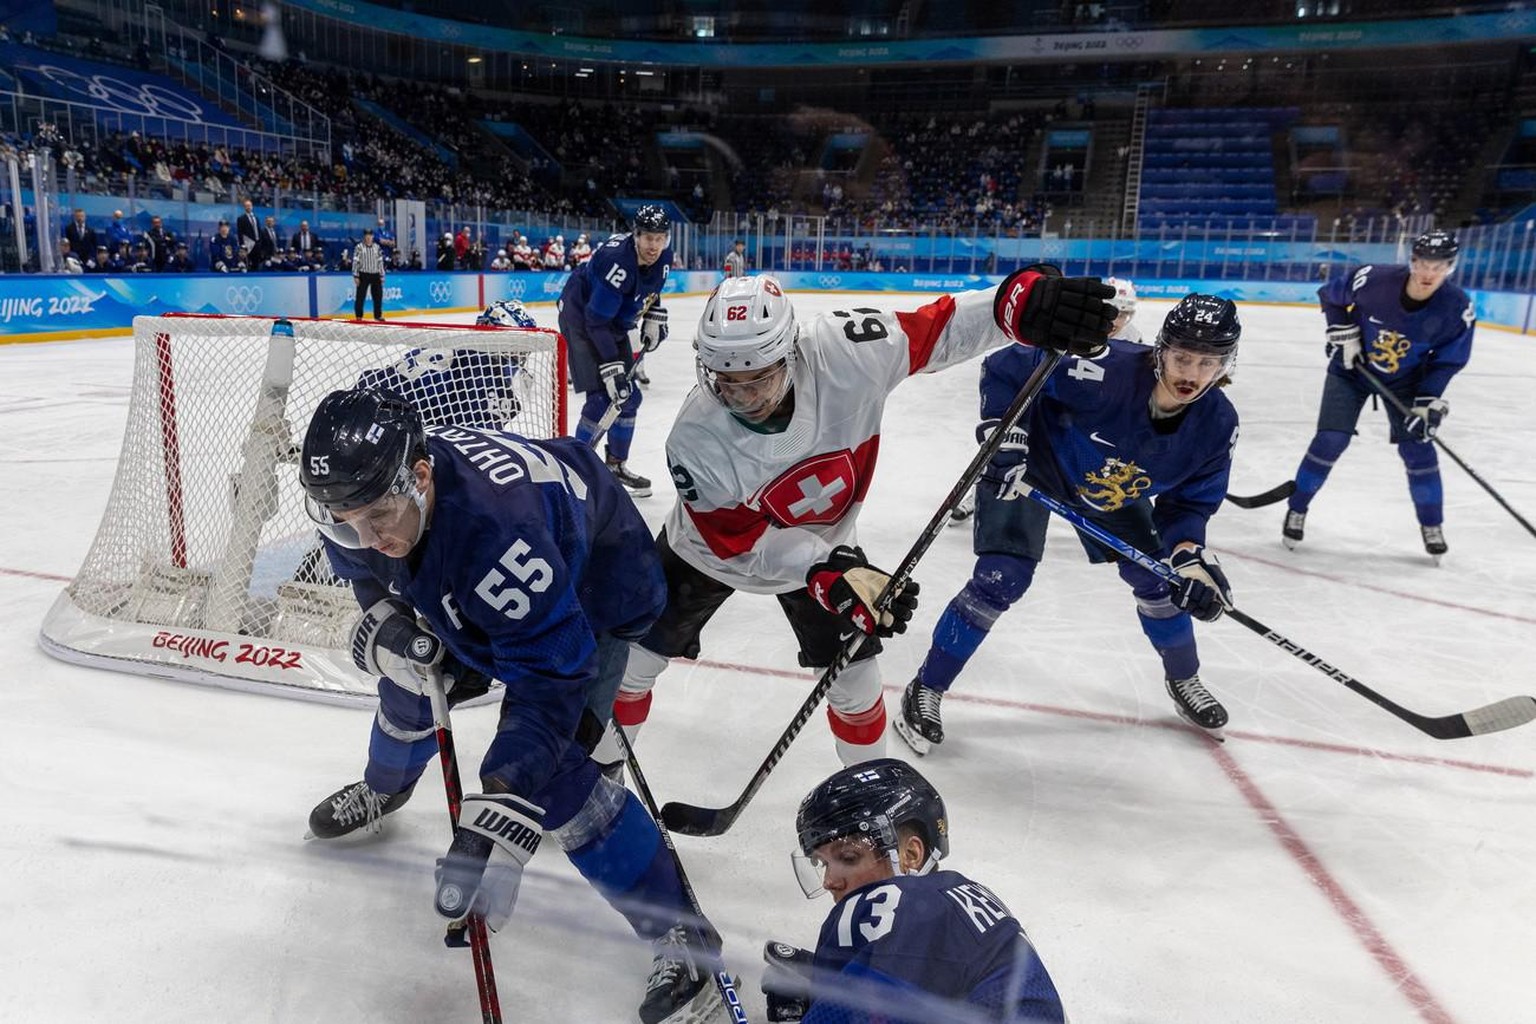 Les Finlandais, bourreaux des Suisses en quarts de finale des JO, ne veulent pas des patinoires aux normes NHL. Et ils ont une raison bien précise.